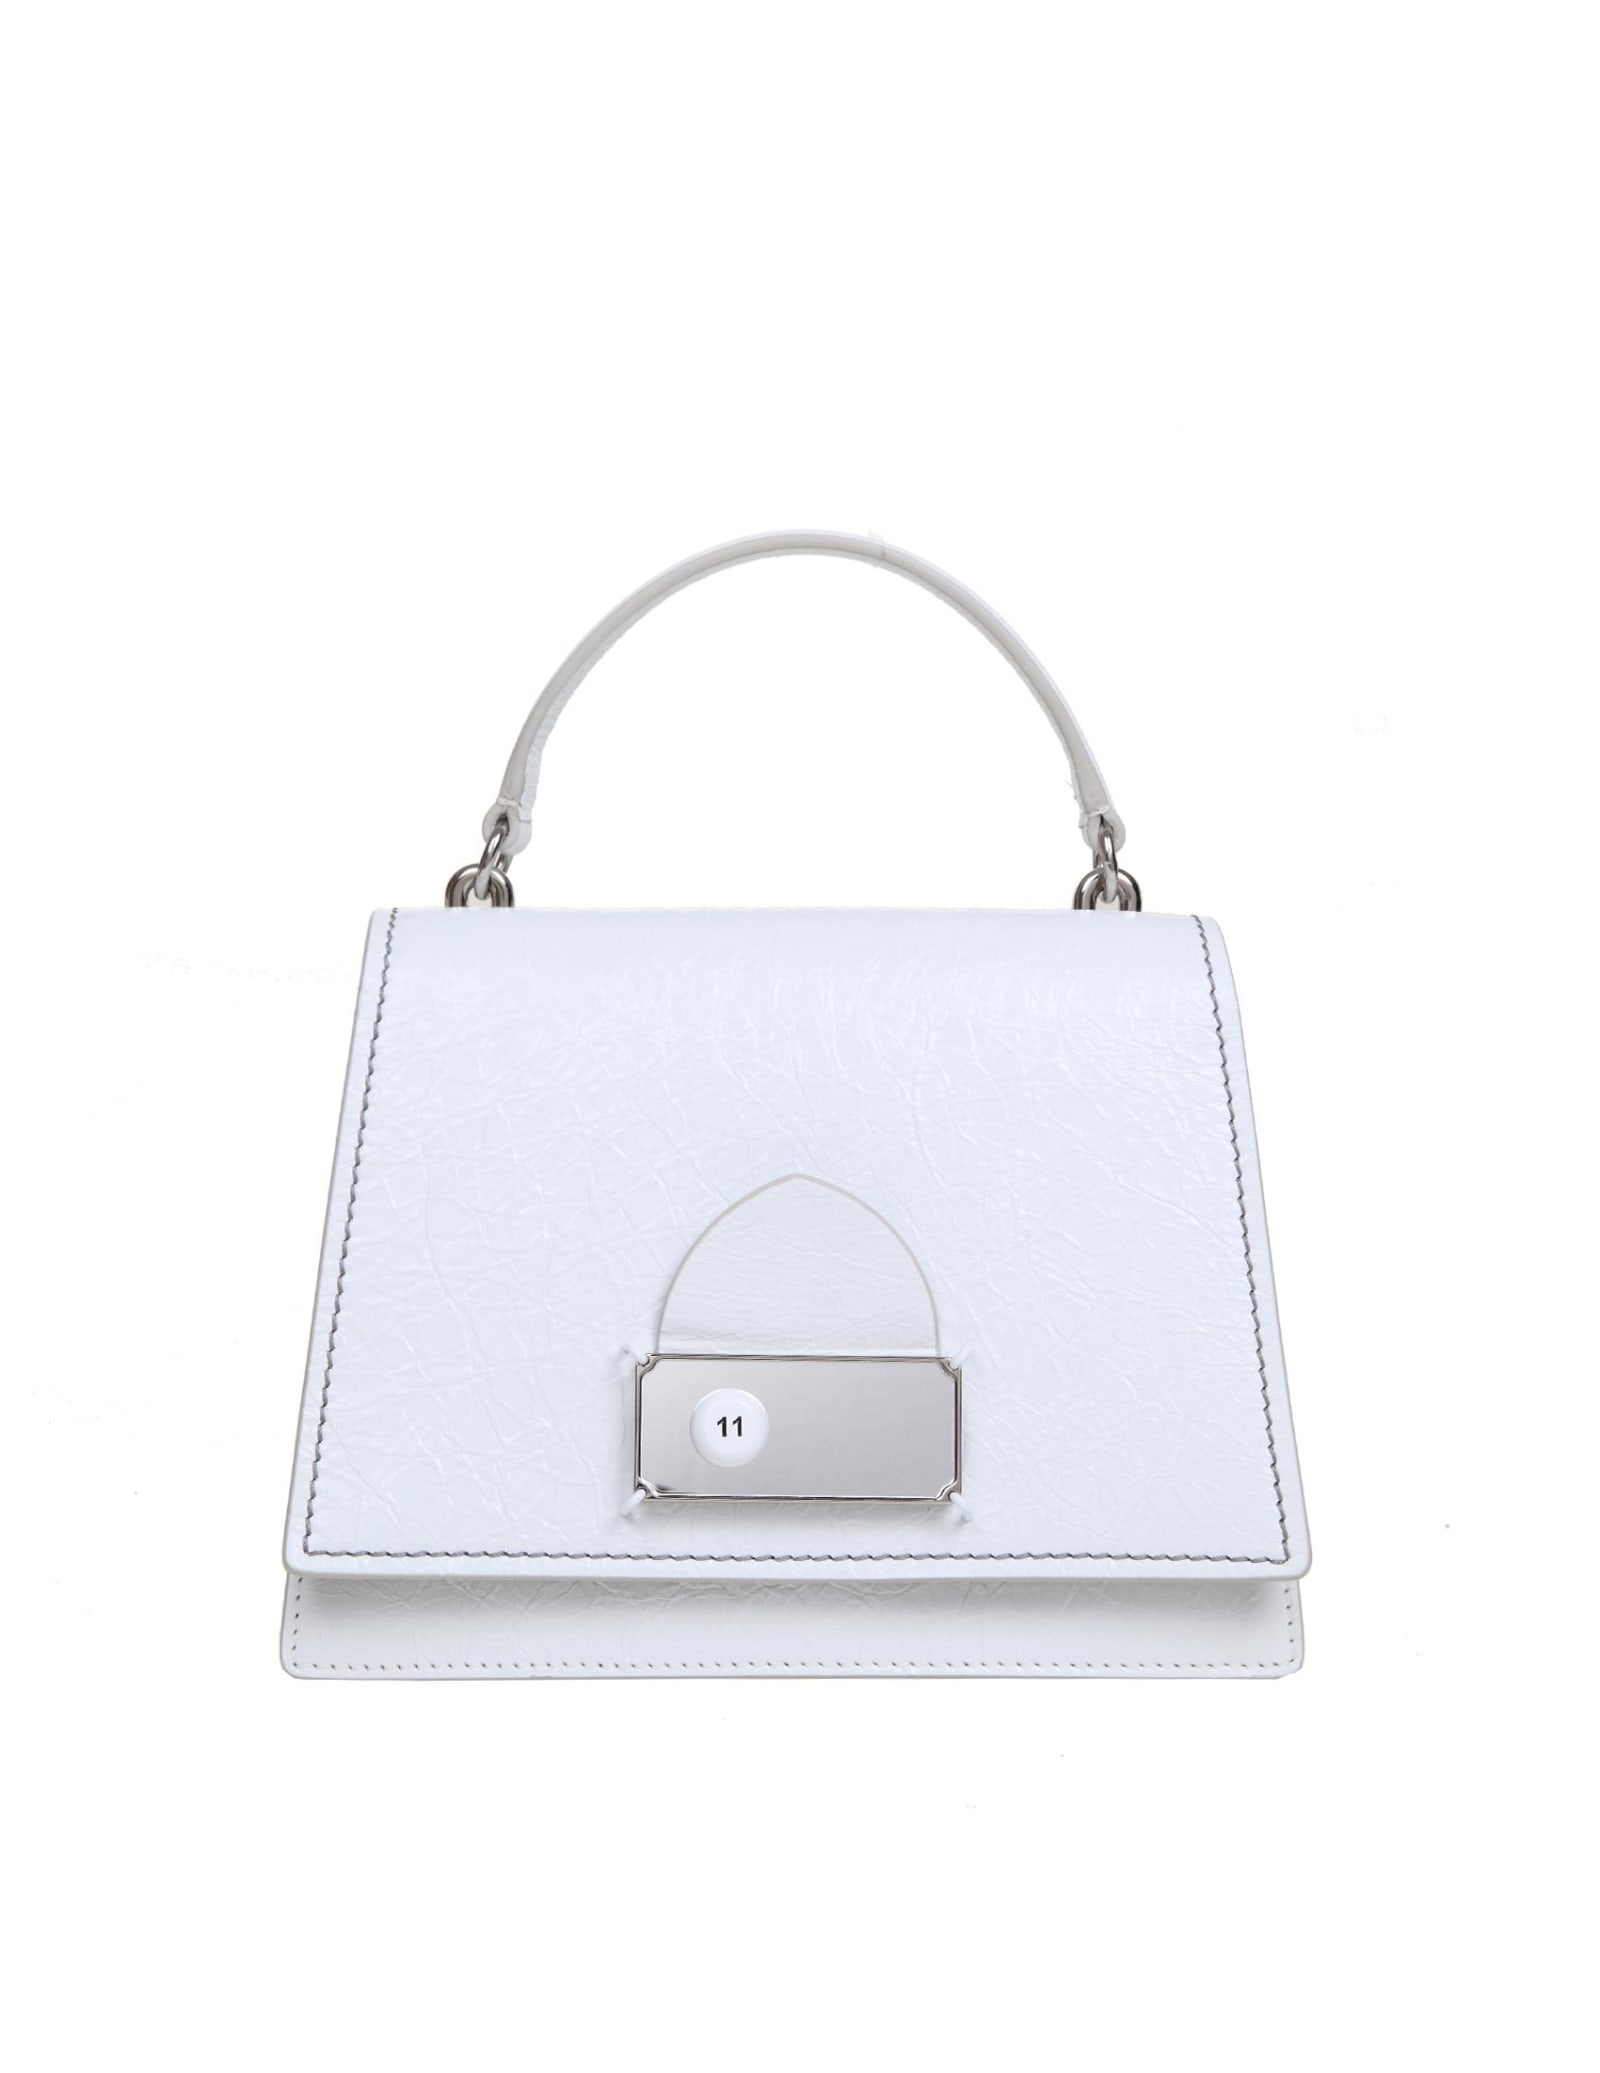 Maison Margiela Handbag In White Painted Leather